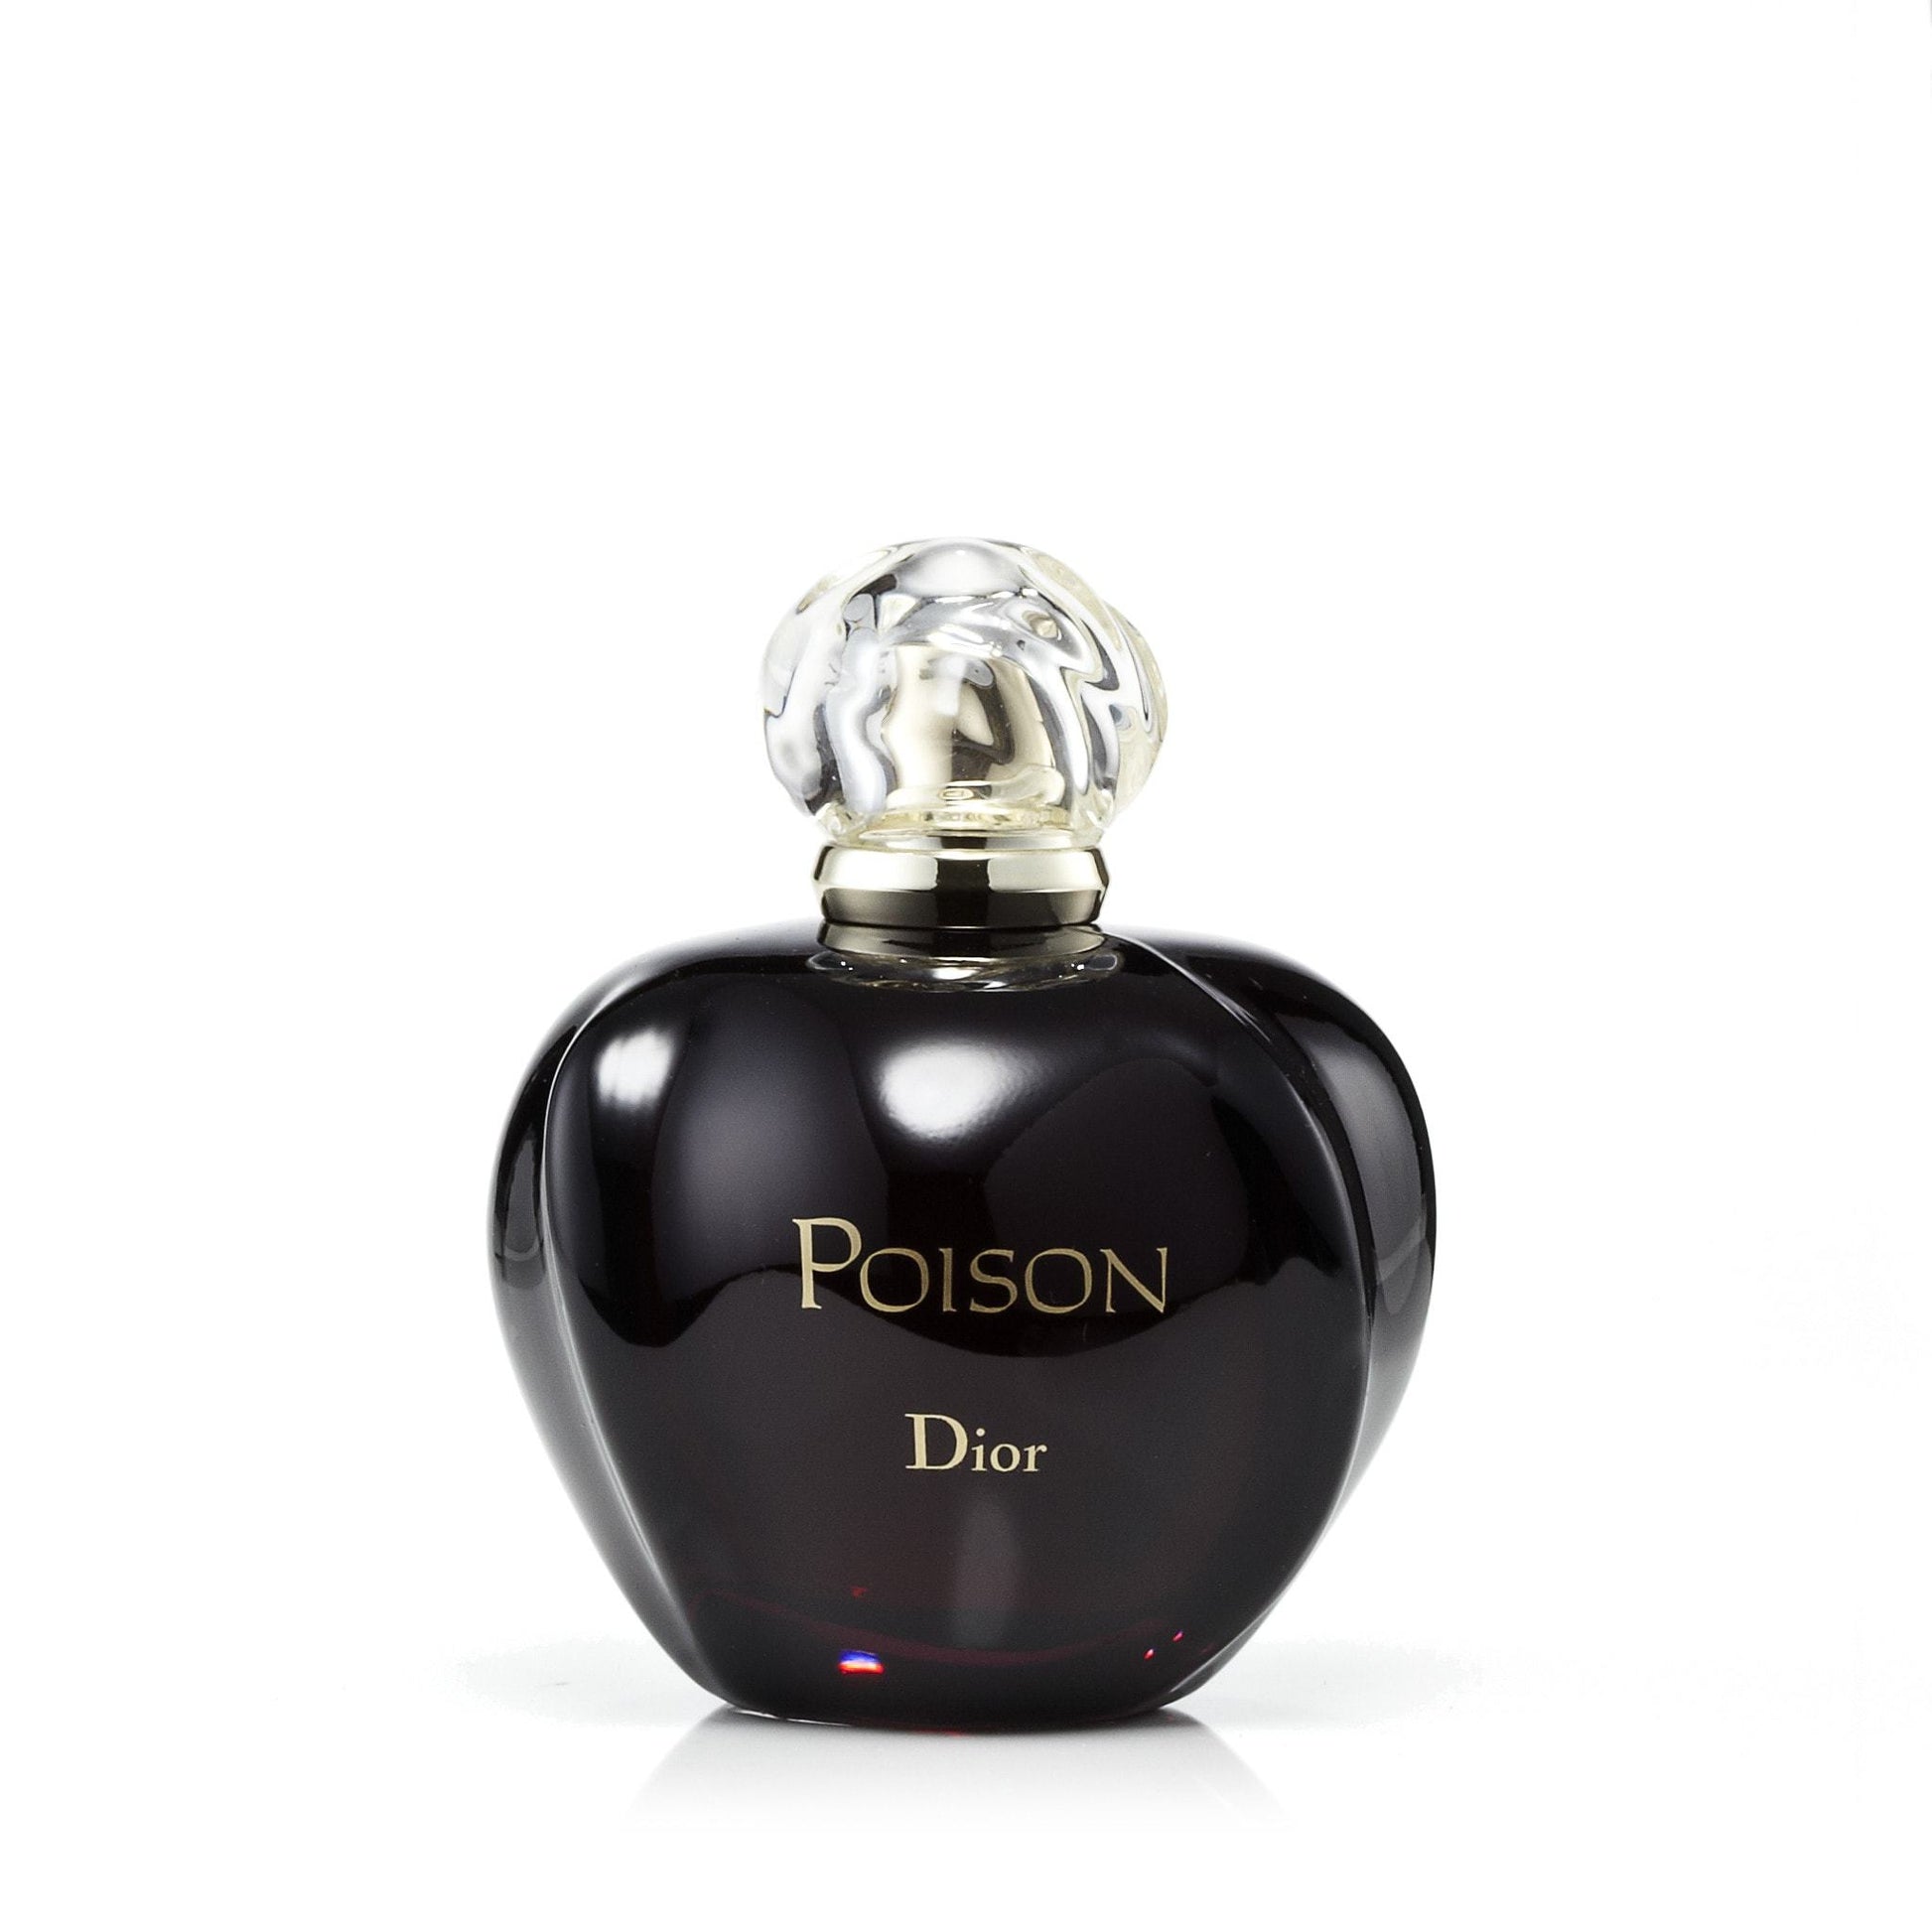 Poison Eau de Toilette Spray for Women by Dior, Product image 2